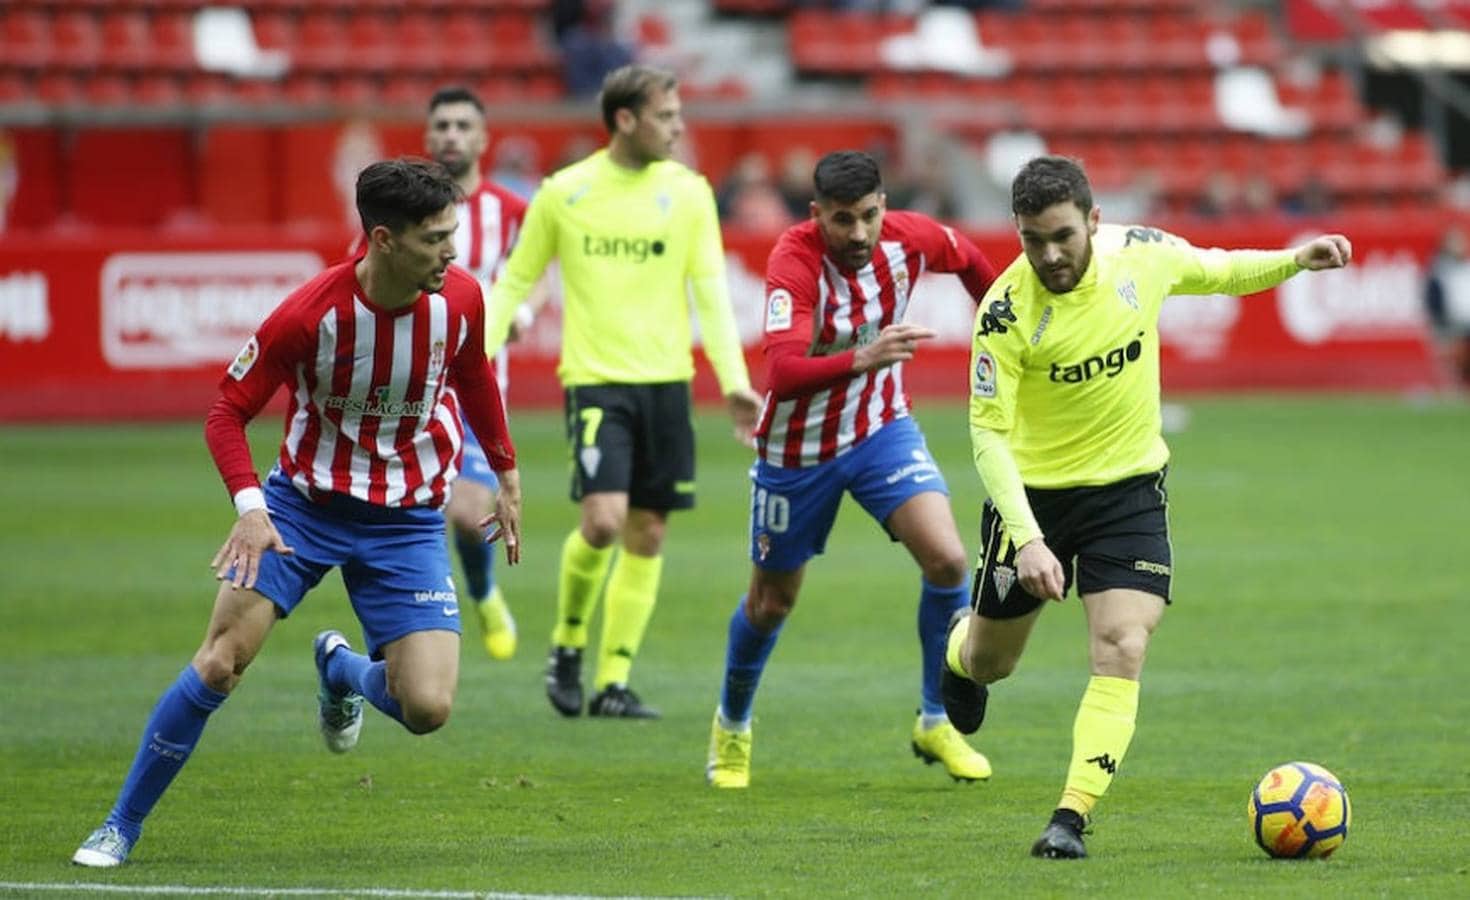 El Sporting de Gijón-Córdoba CF, en imágenes